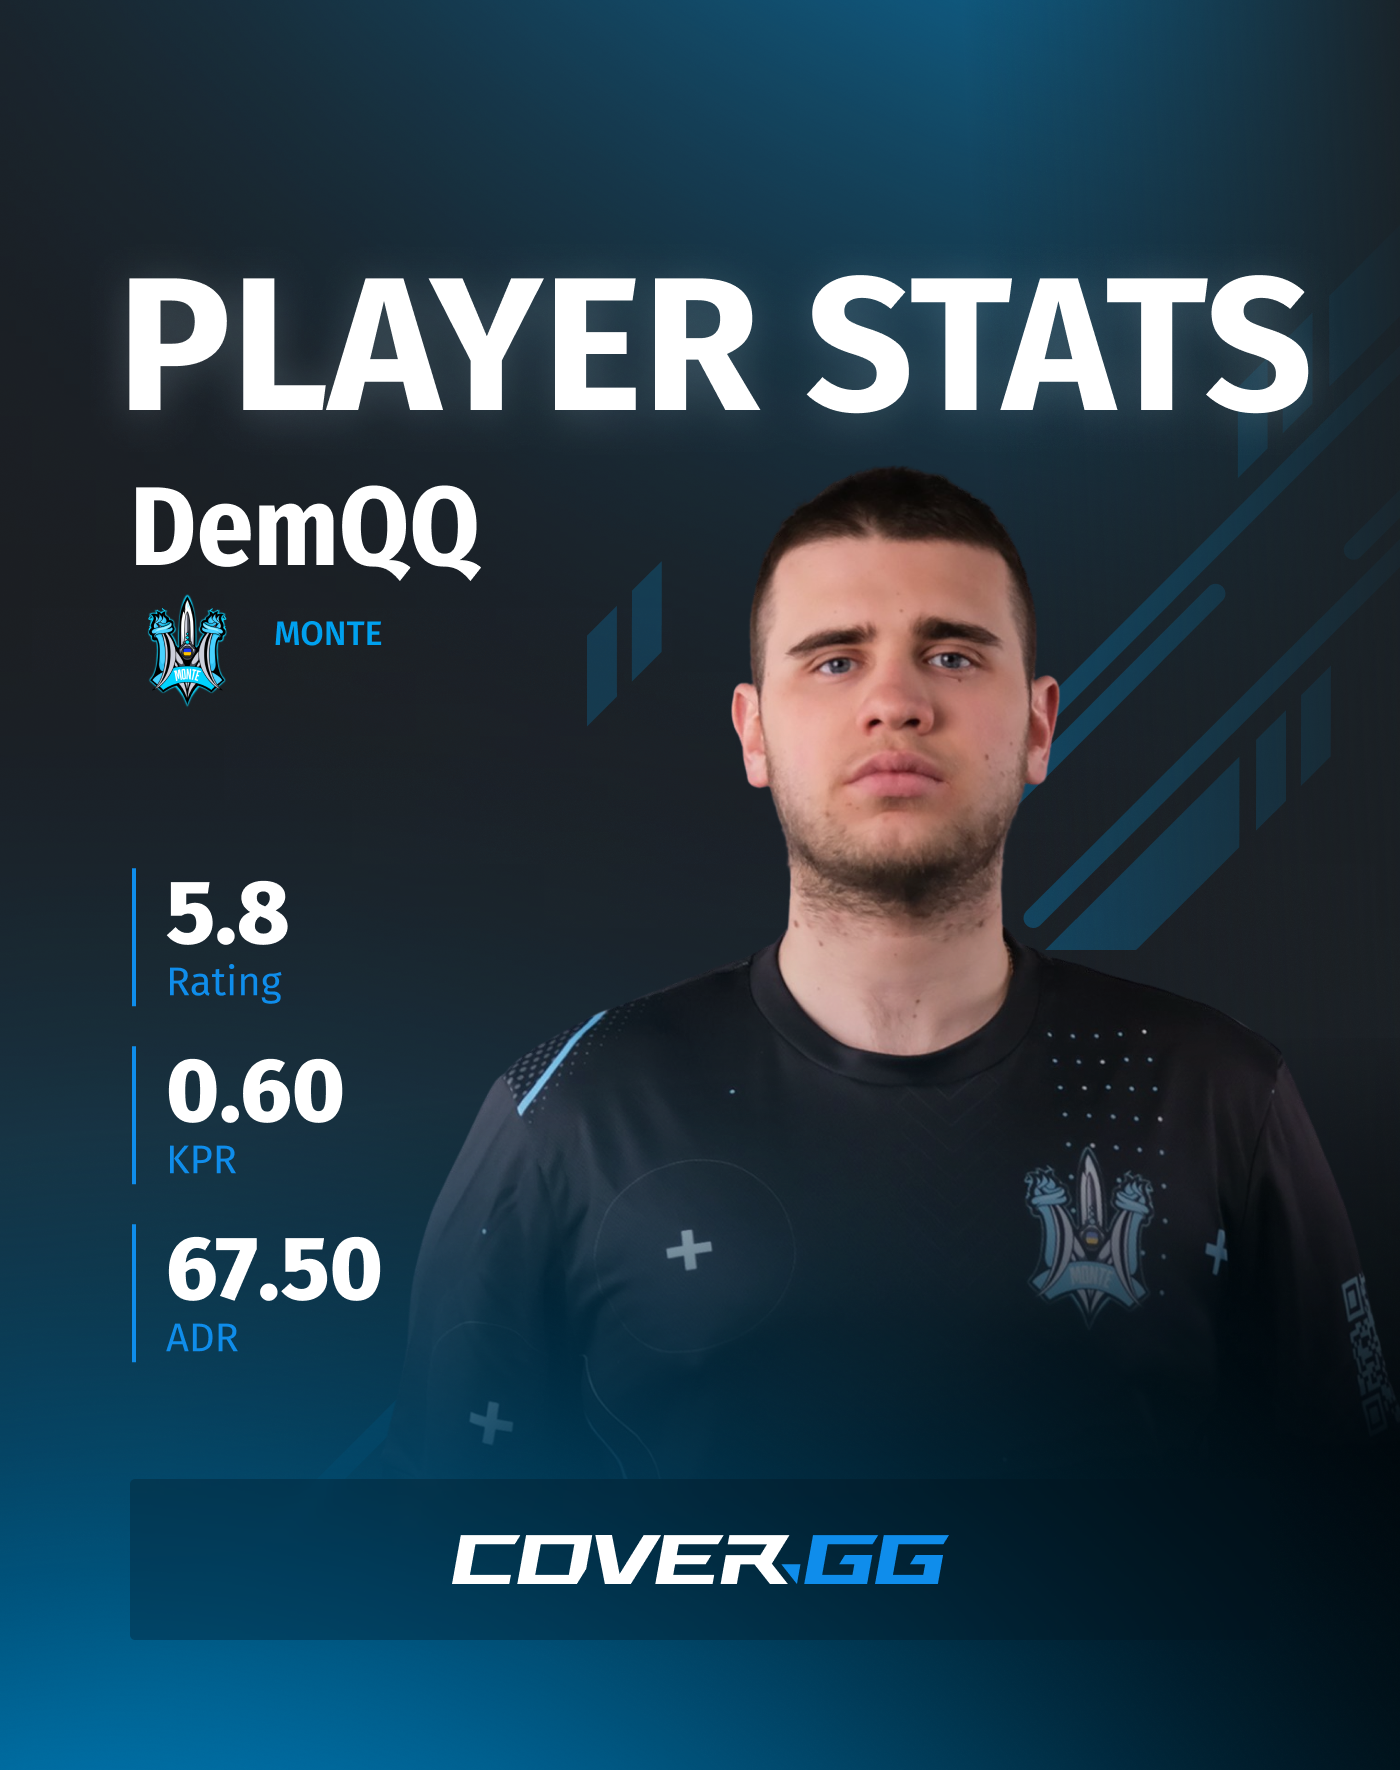 DemQQ's stats